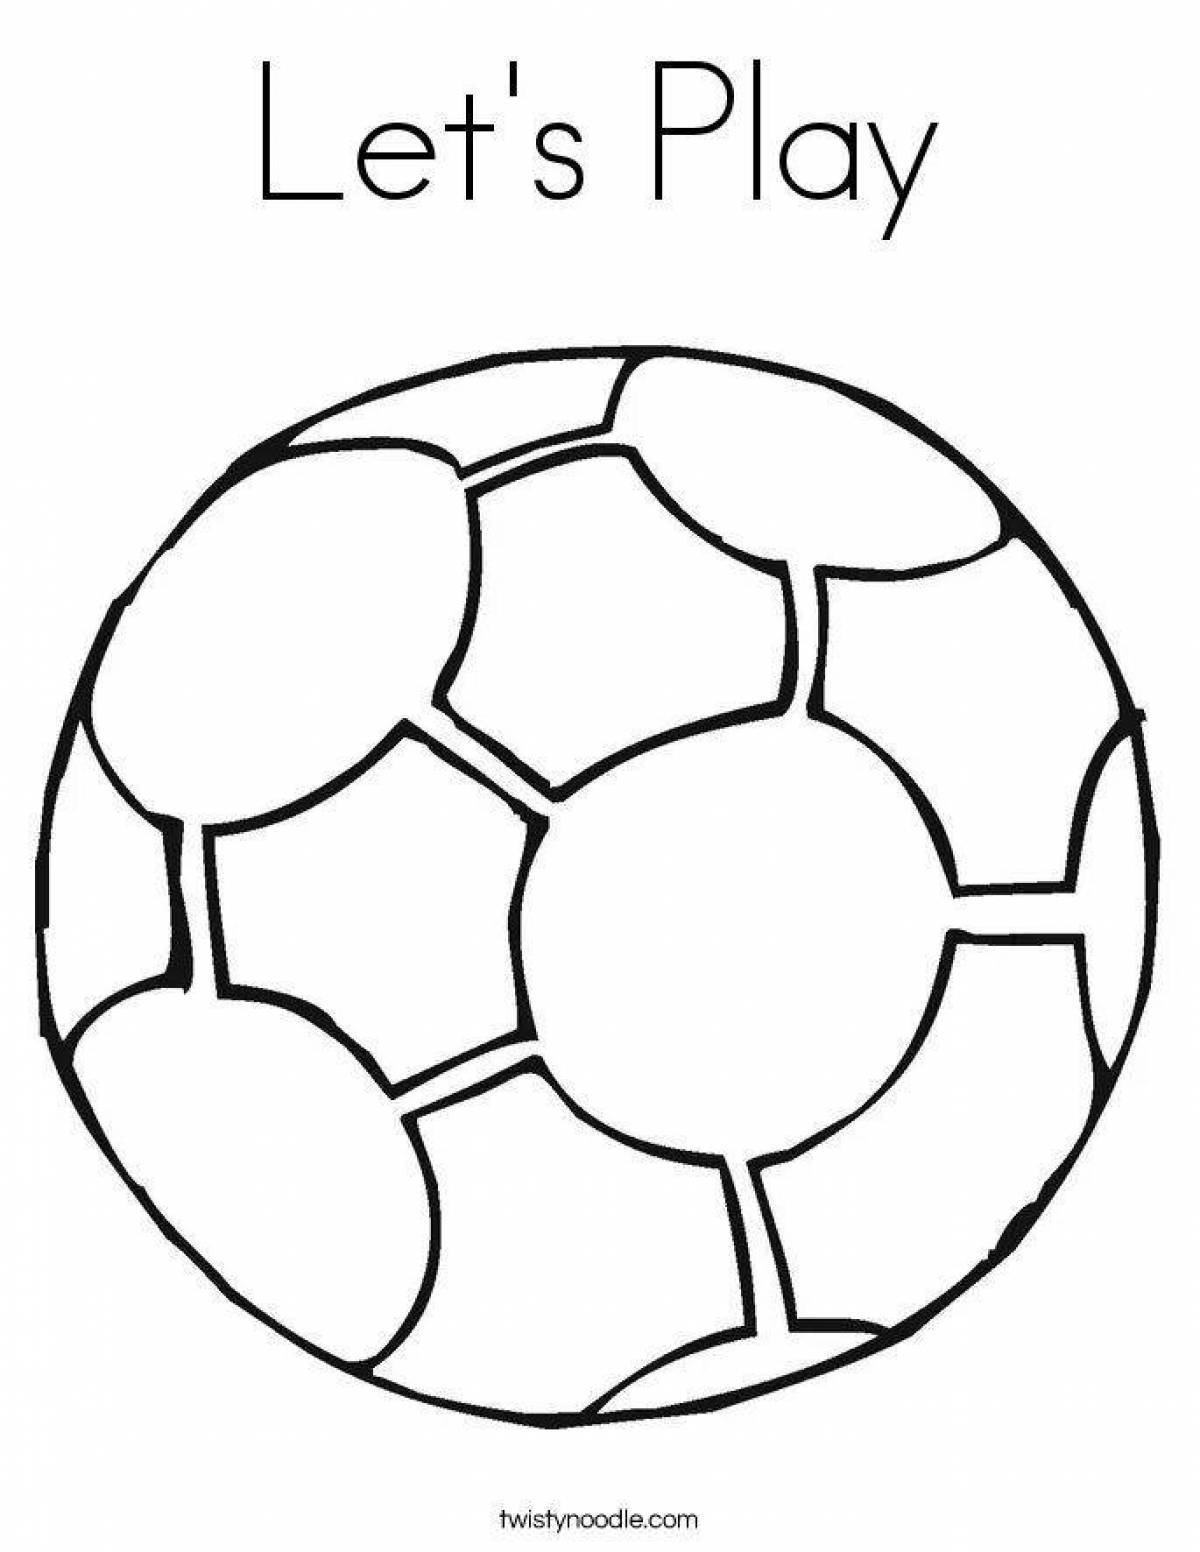 Увлекательная раскраска футбольного мяча для детей